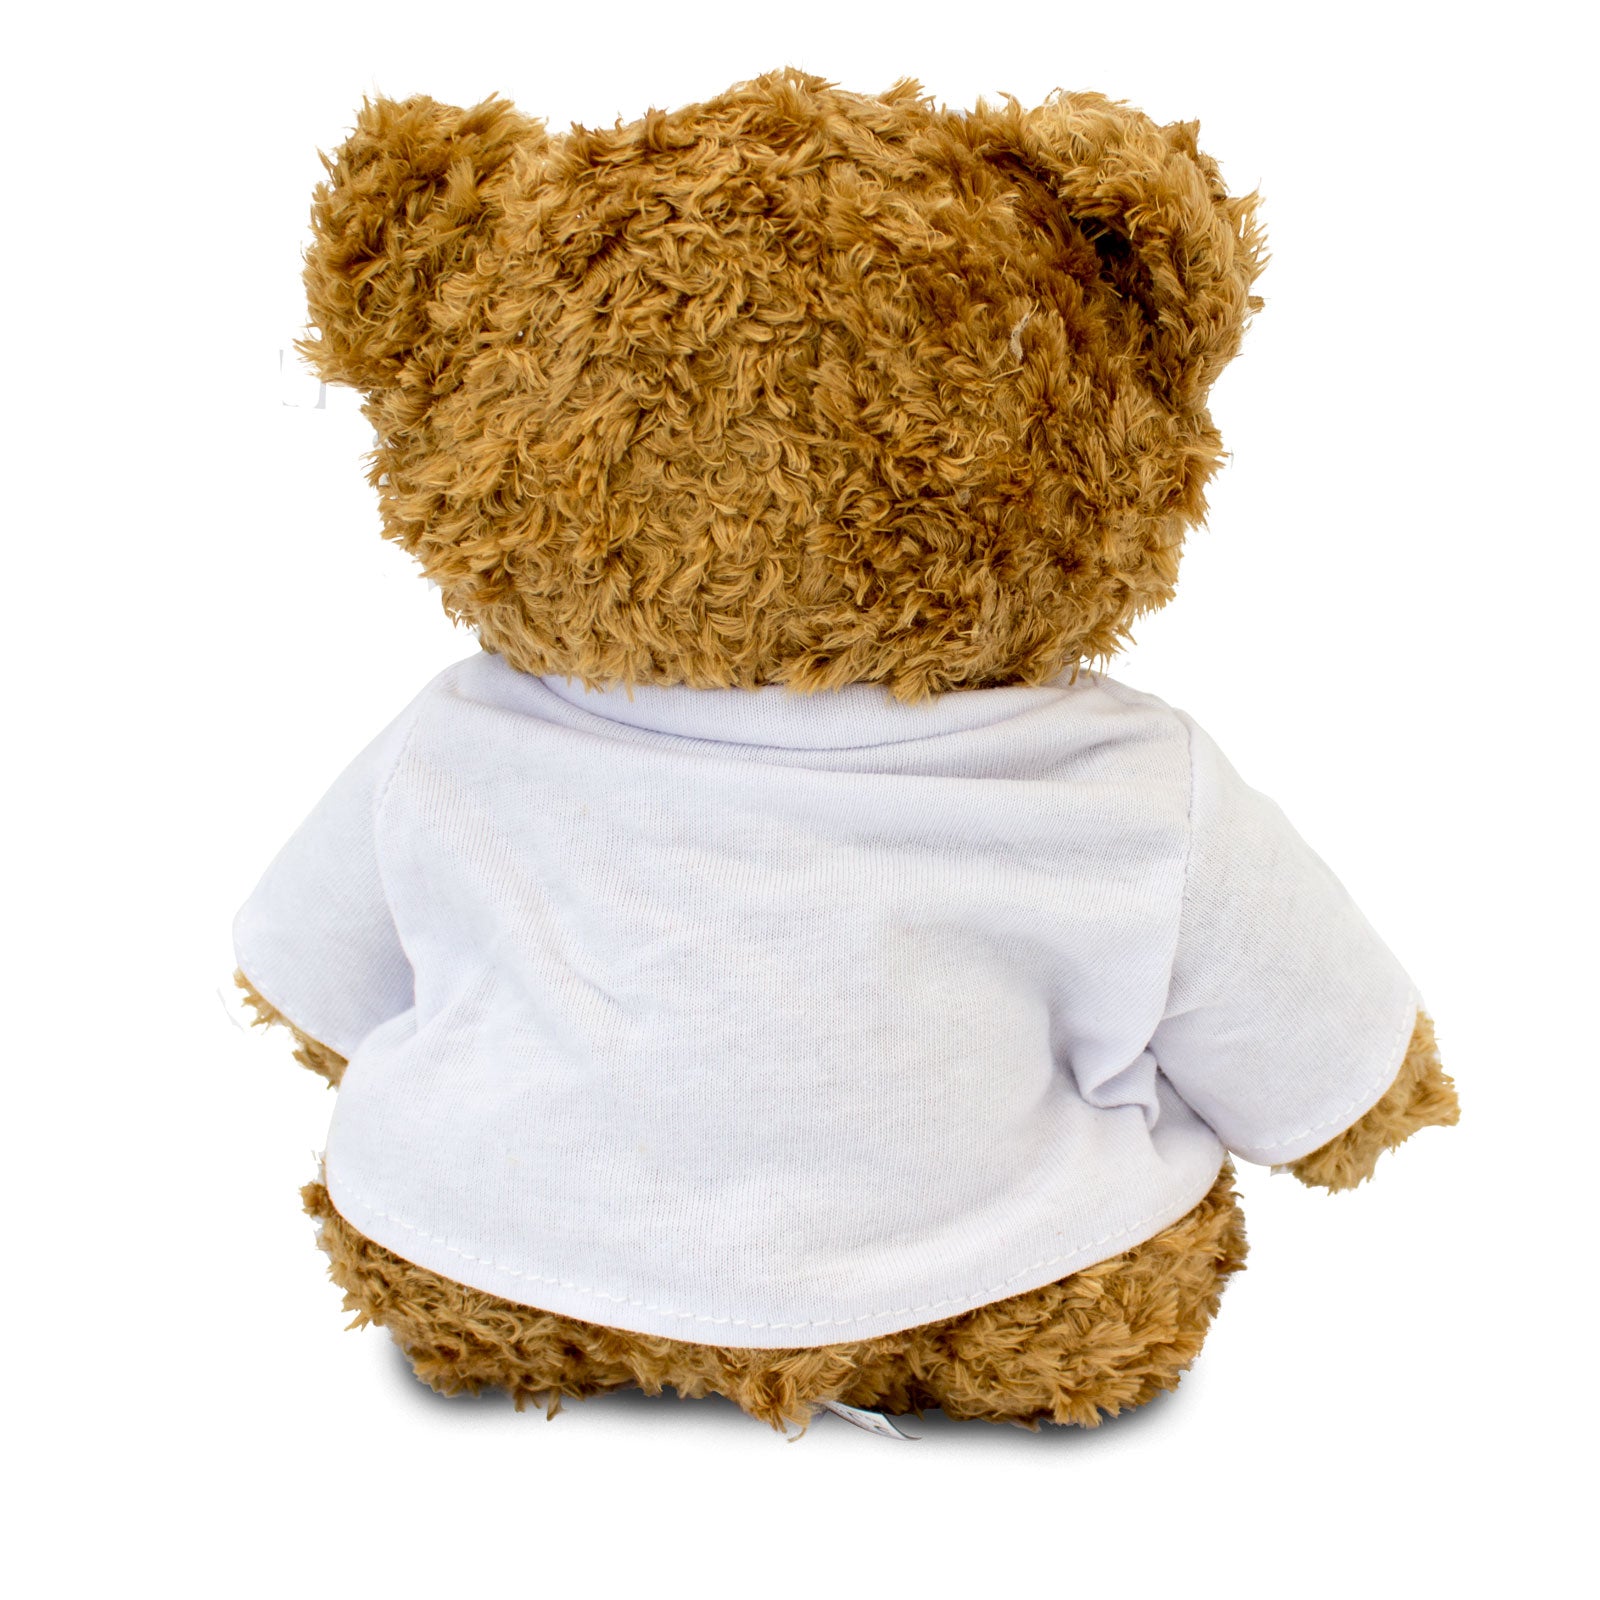 I Love Francois - Teddy Bear